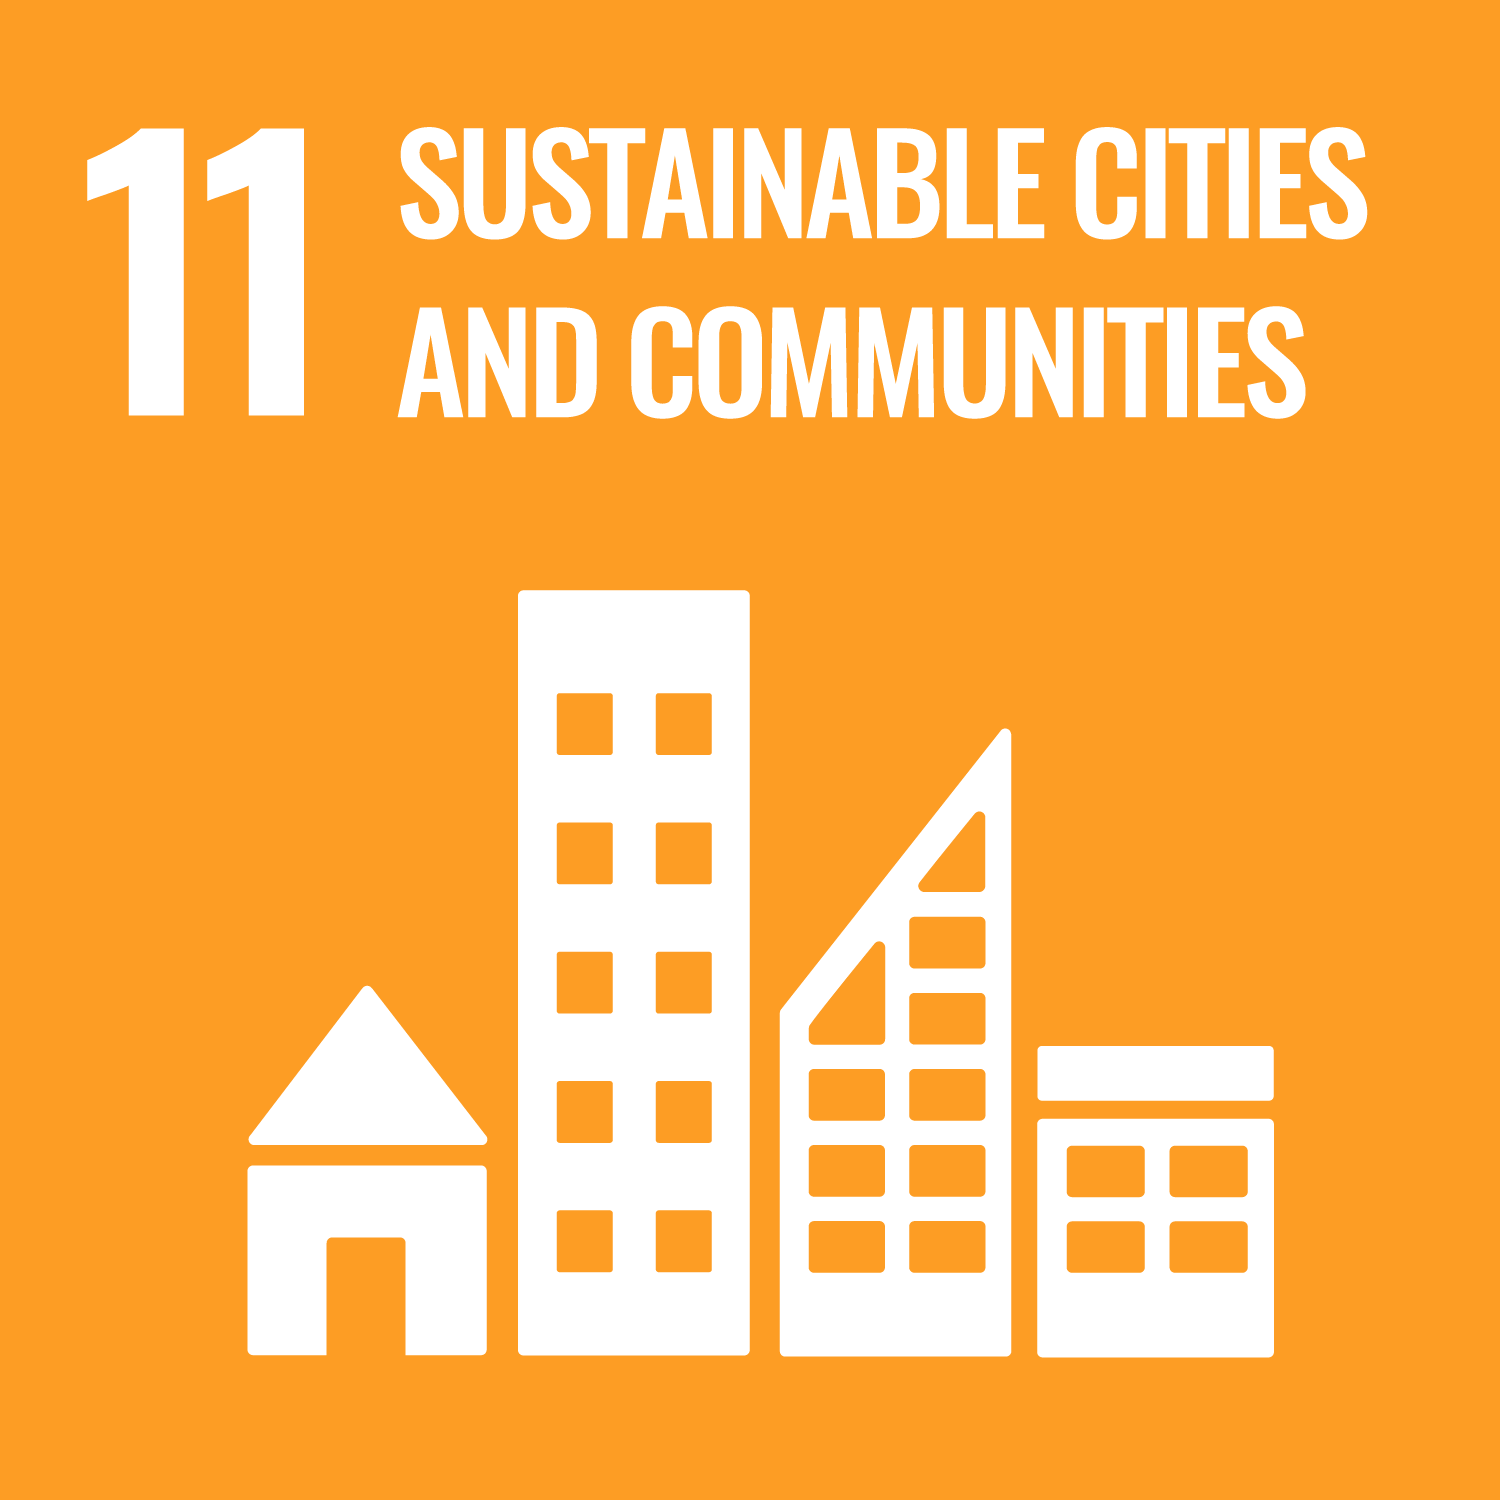 11. Ciudades y Comunidades Sostenibles